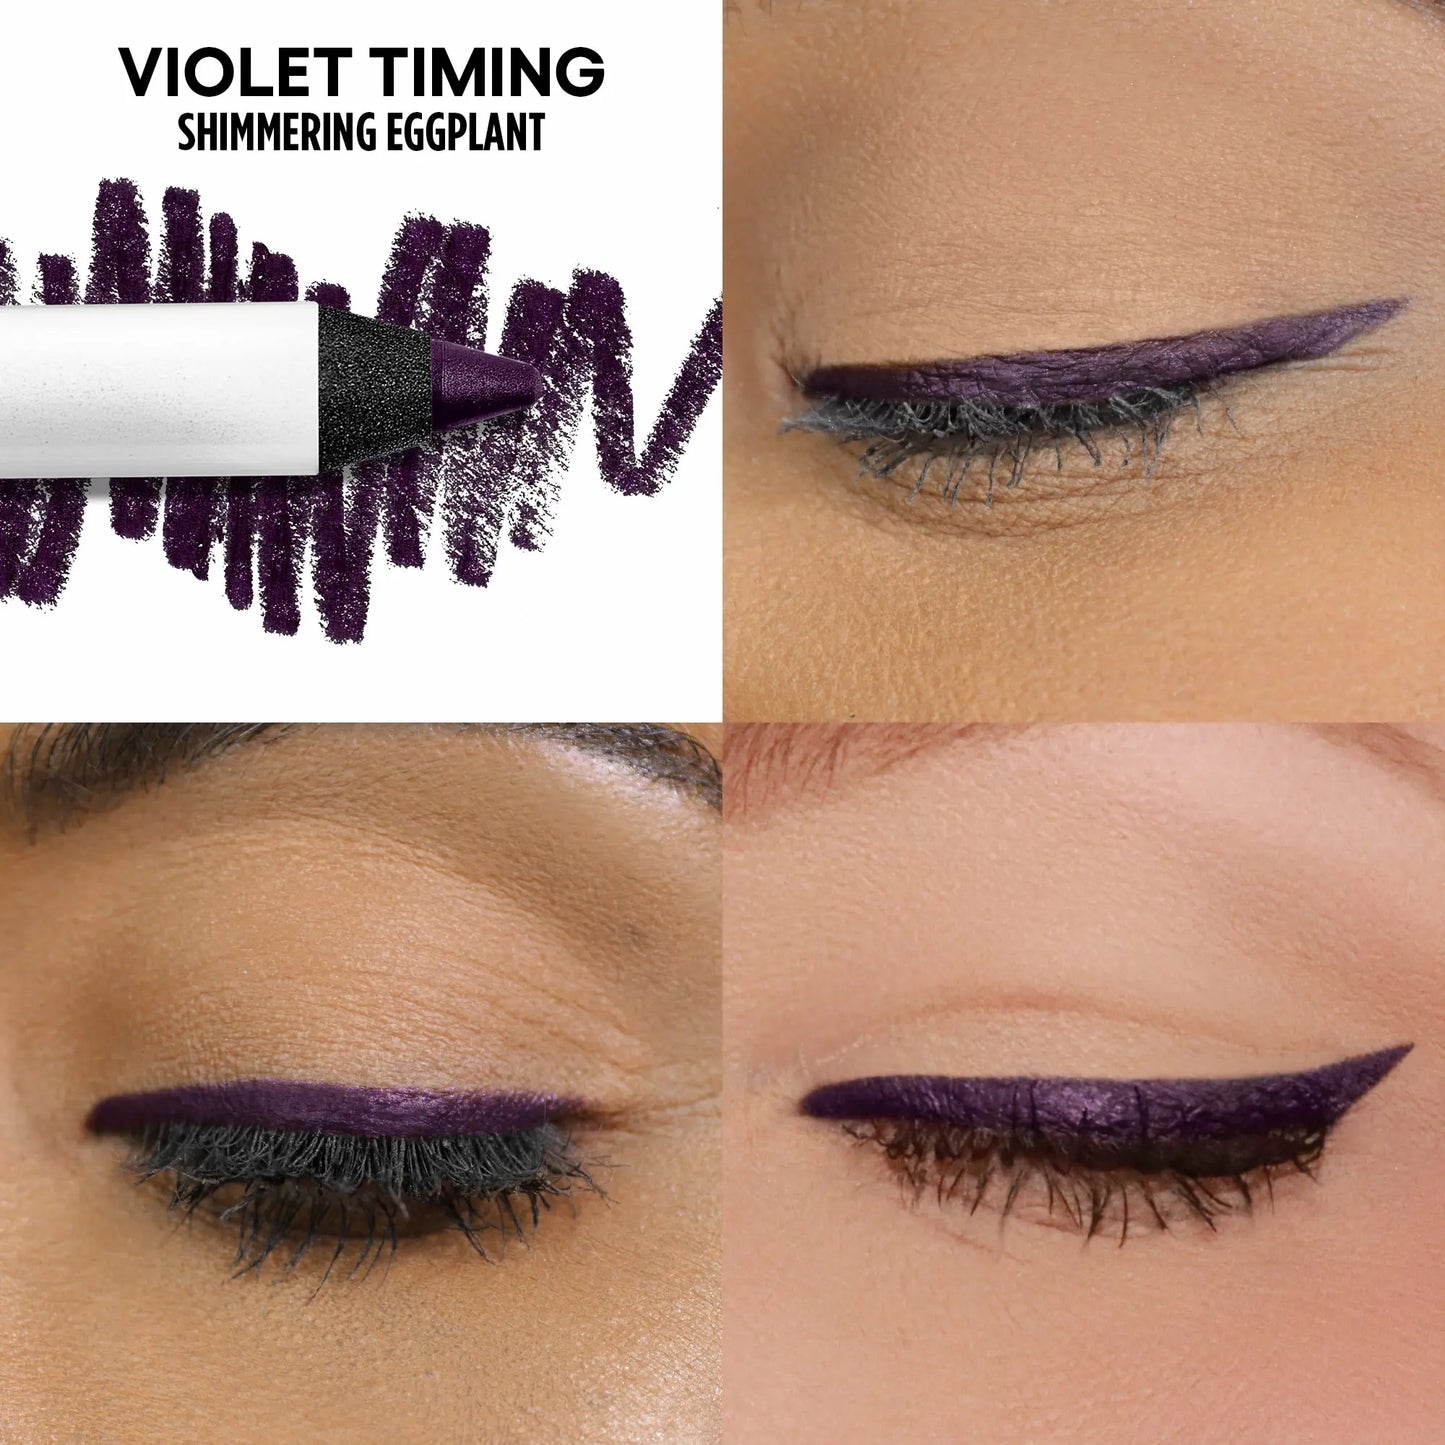 Violet Timing